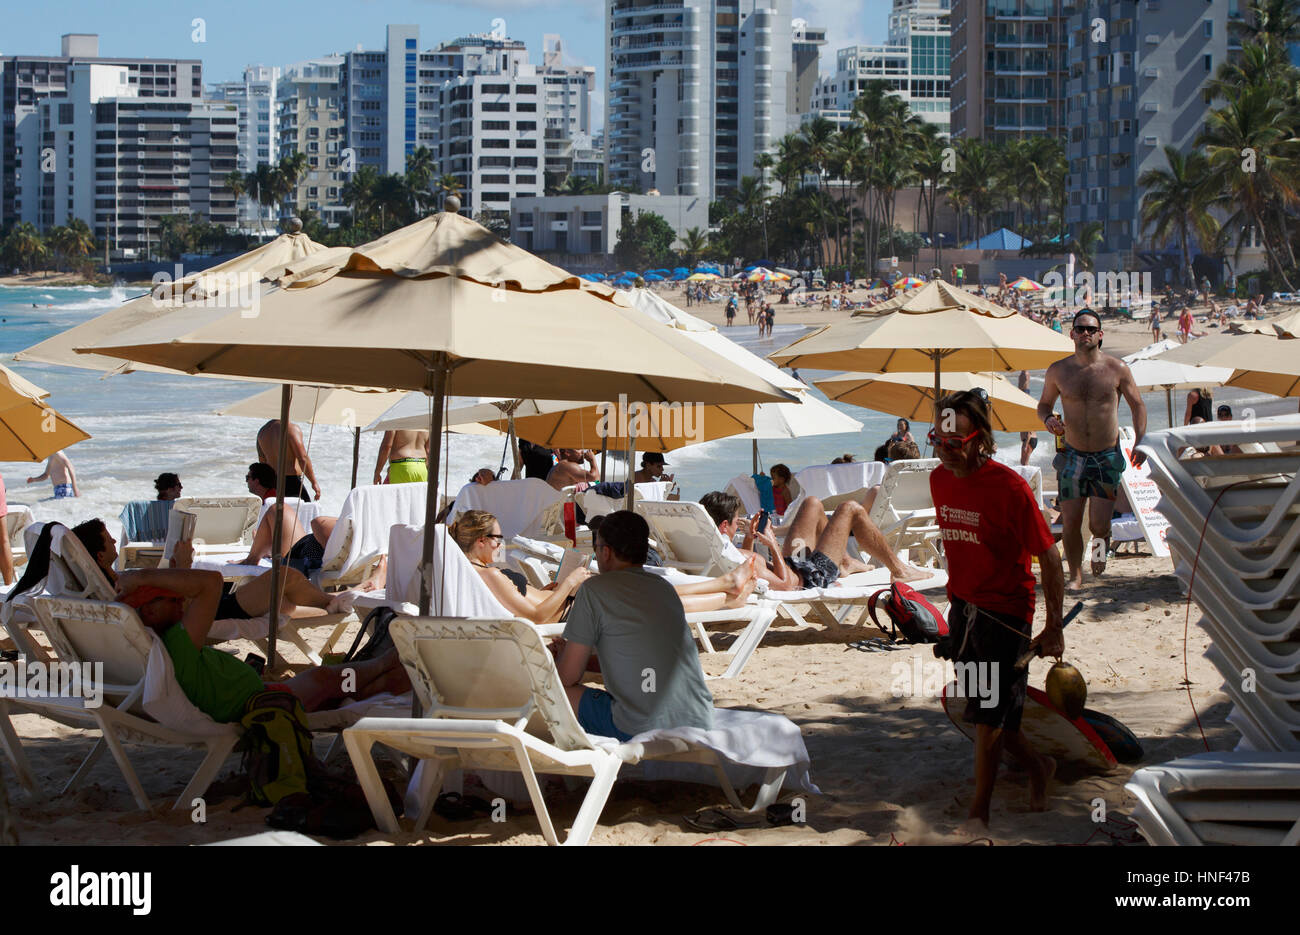 Crowded beach, Condado, San Juan, Puerto Rico Stock Photo